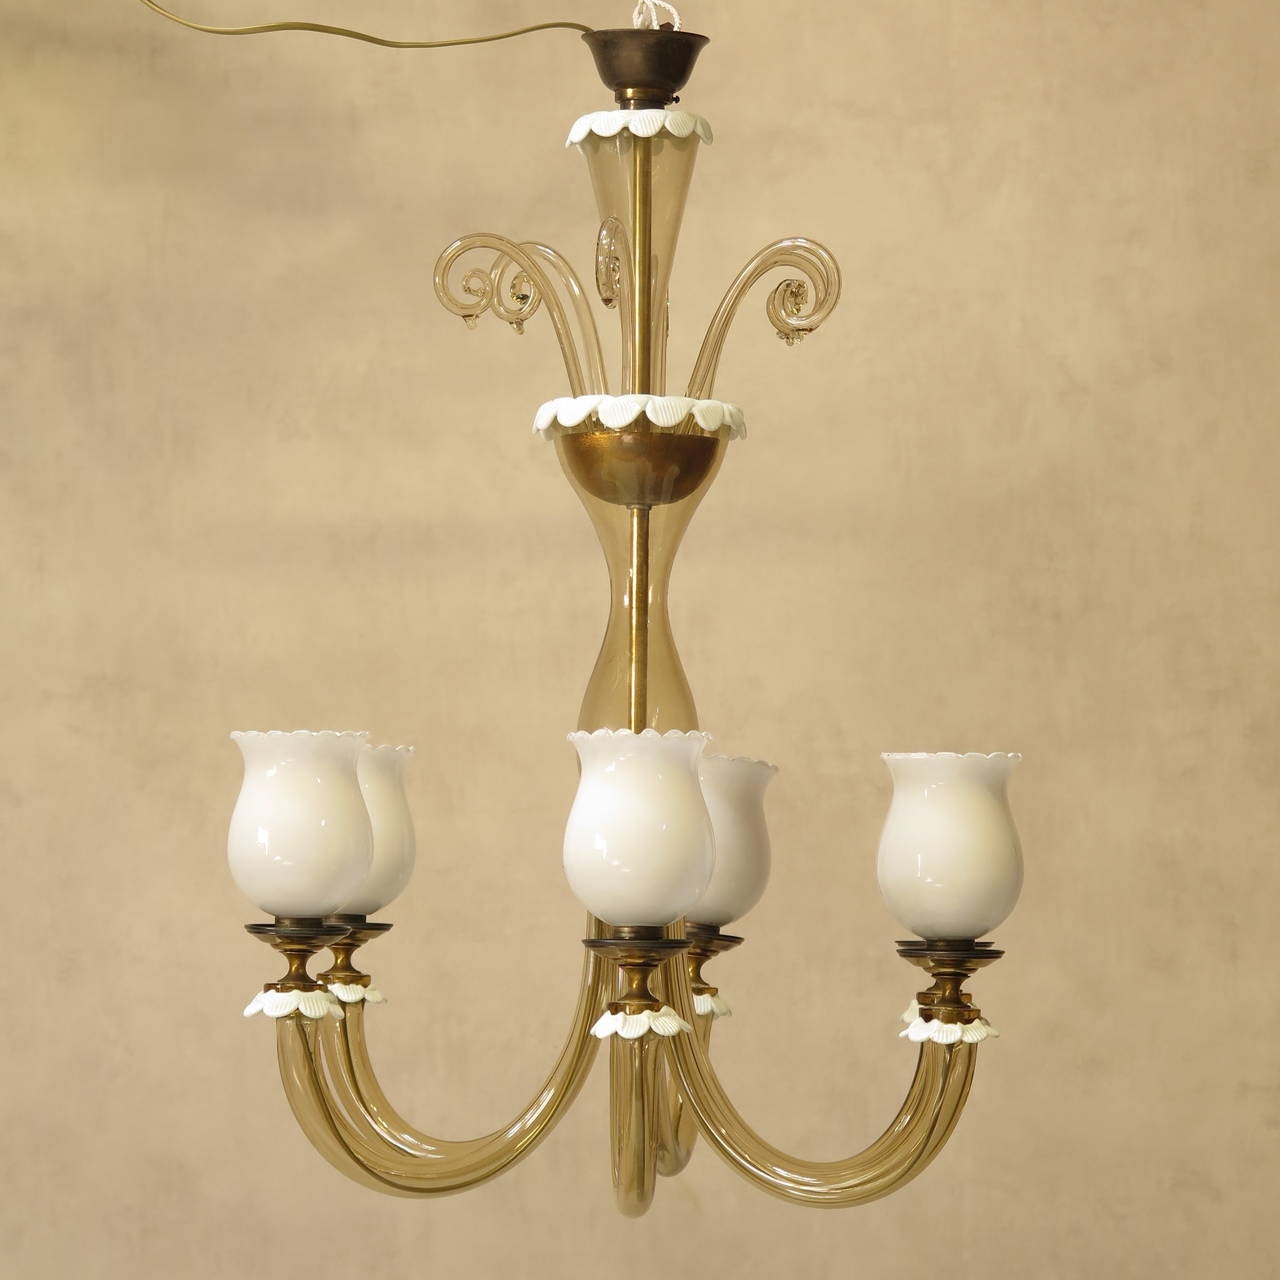 Eleganter sechsflammiger venezianischer Kronleuchter aus bernsteinfarbenem Glas, mit Milchglasbögen und gewelltem Dekor.